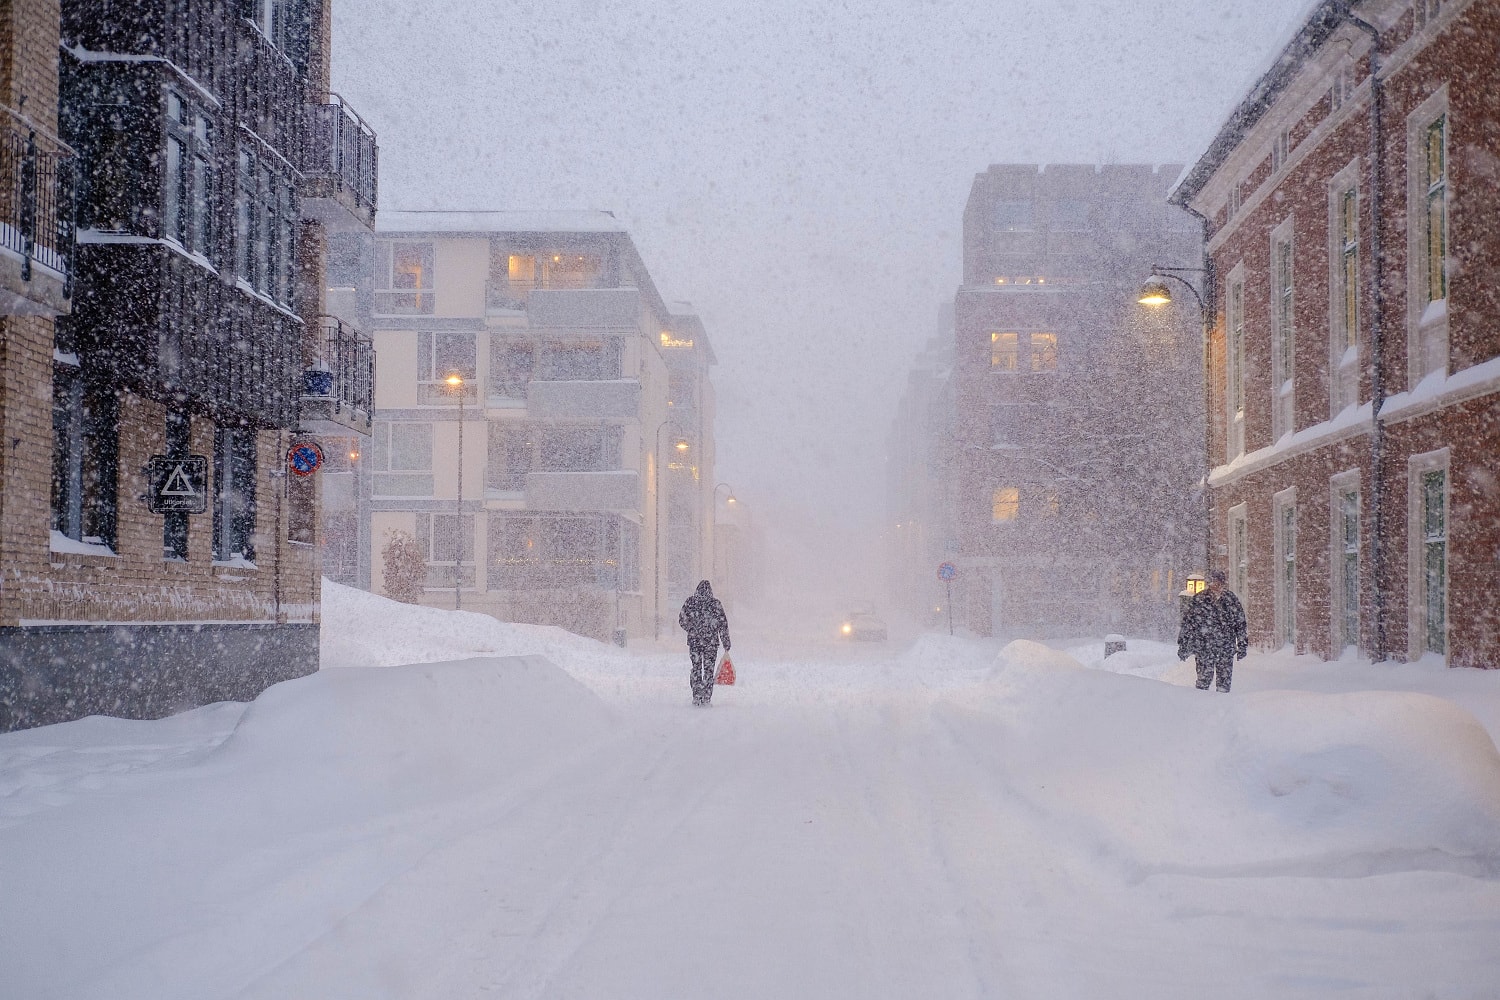 En bakgate i Drammen sentrum i snøvær